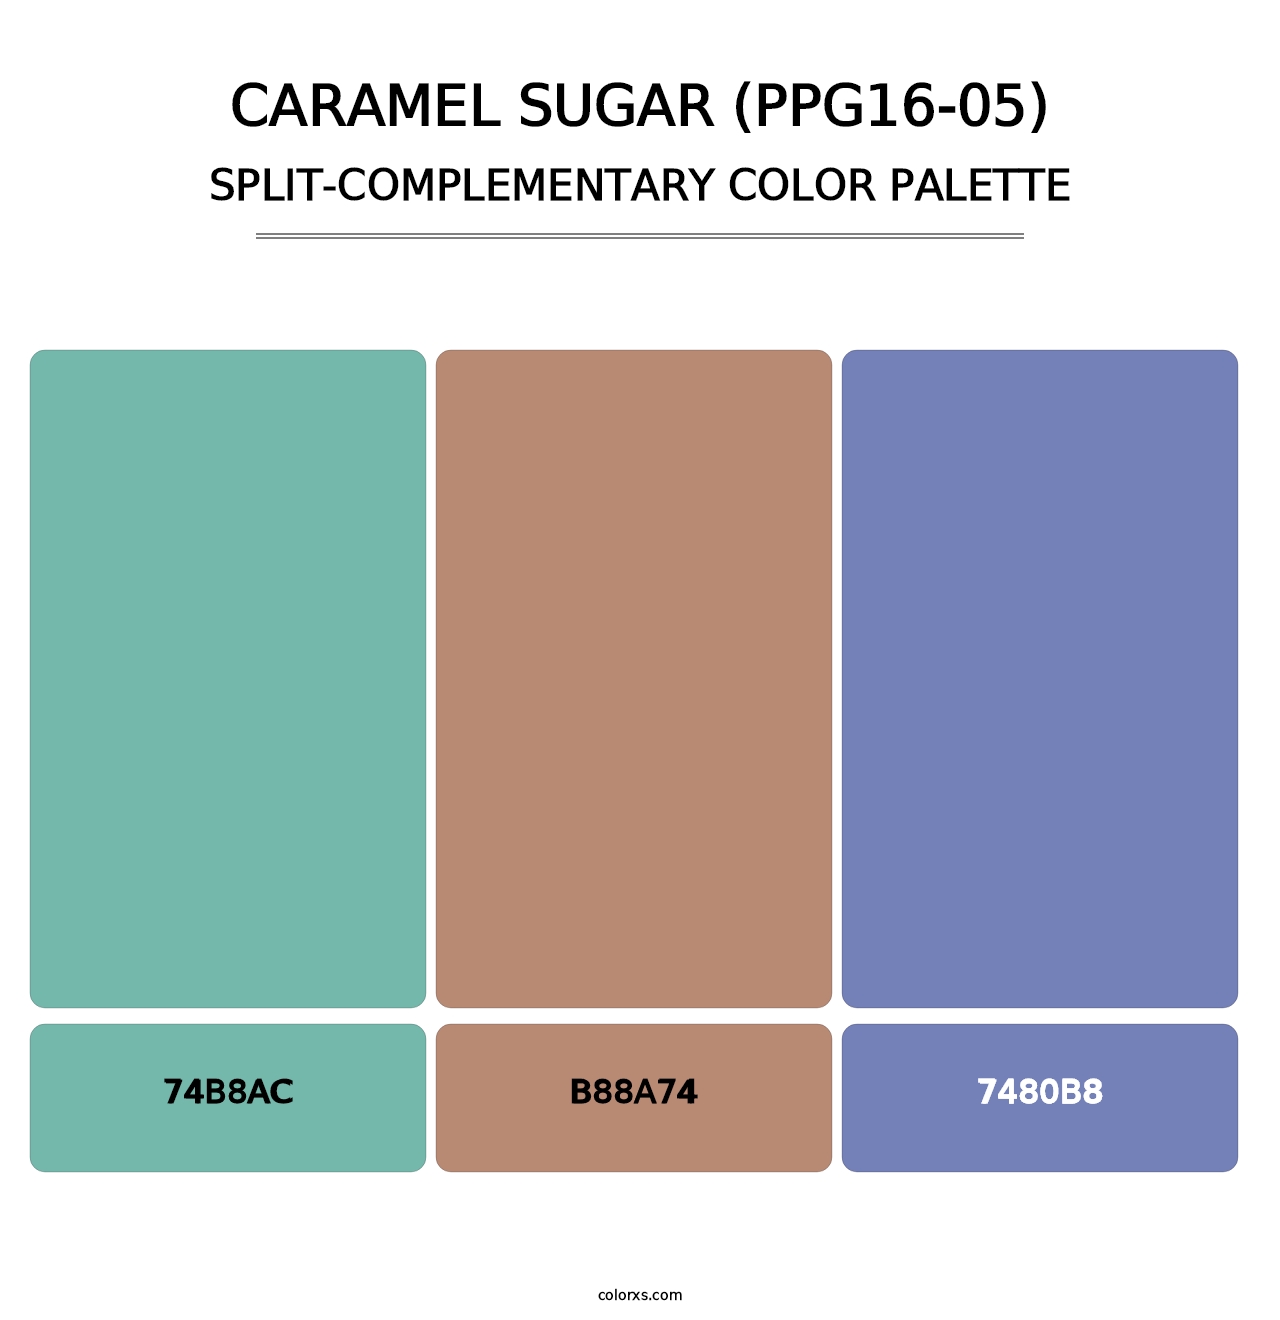 Caramel Sugar (PPG16-05) - Split-Complementary Color Palette